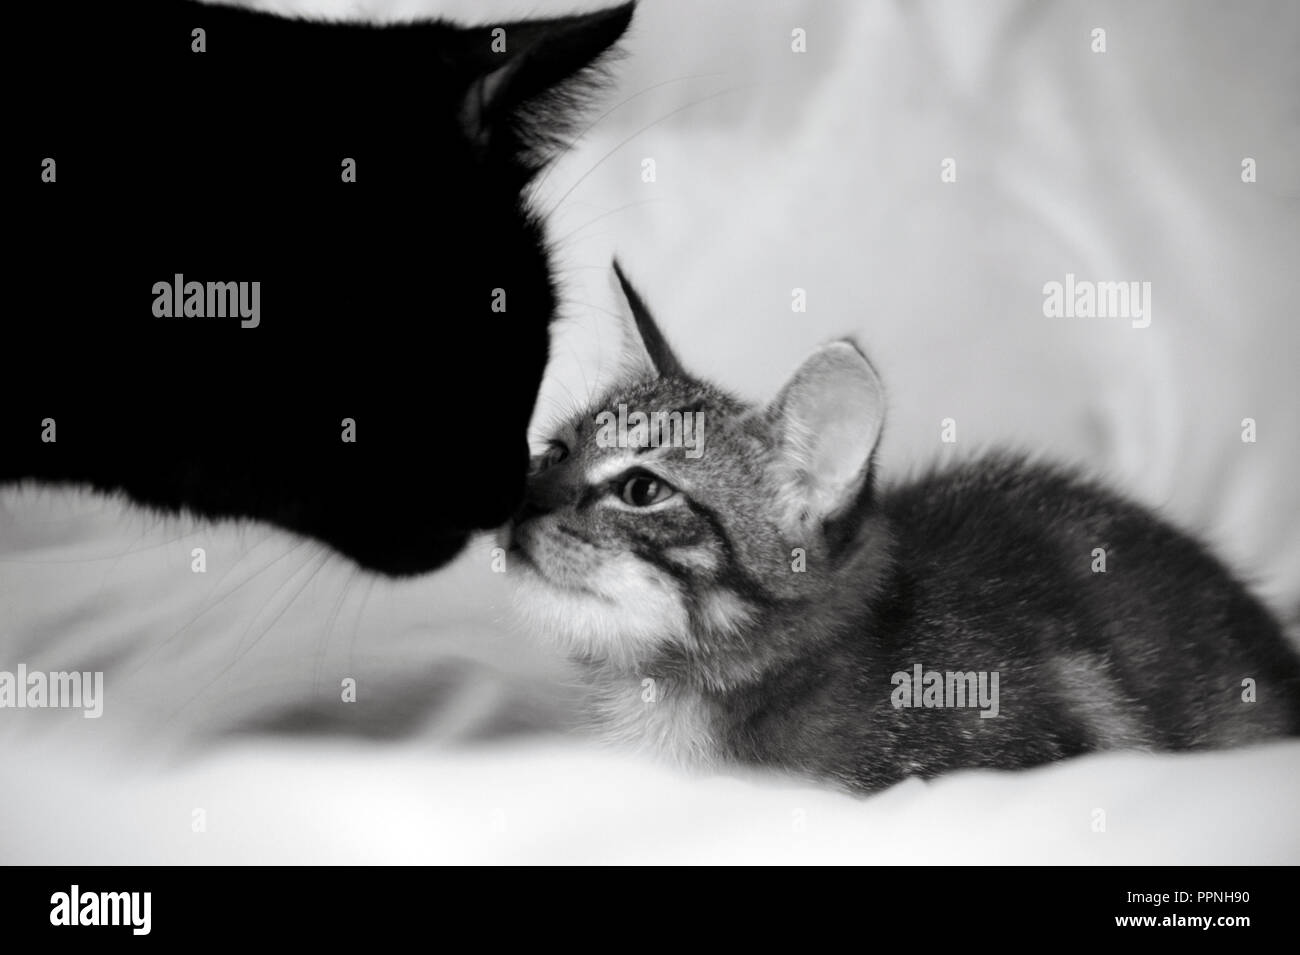 Zwei Katzen, eine schwarze und eine kleine gestreifte Katze, Tiere jeder des anderen Nasen riechen, schwarz-weiß Fotos, weiß-grauer Hintergrund Stockfoto